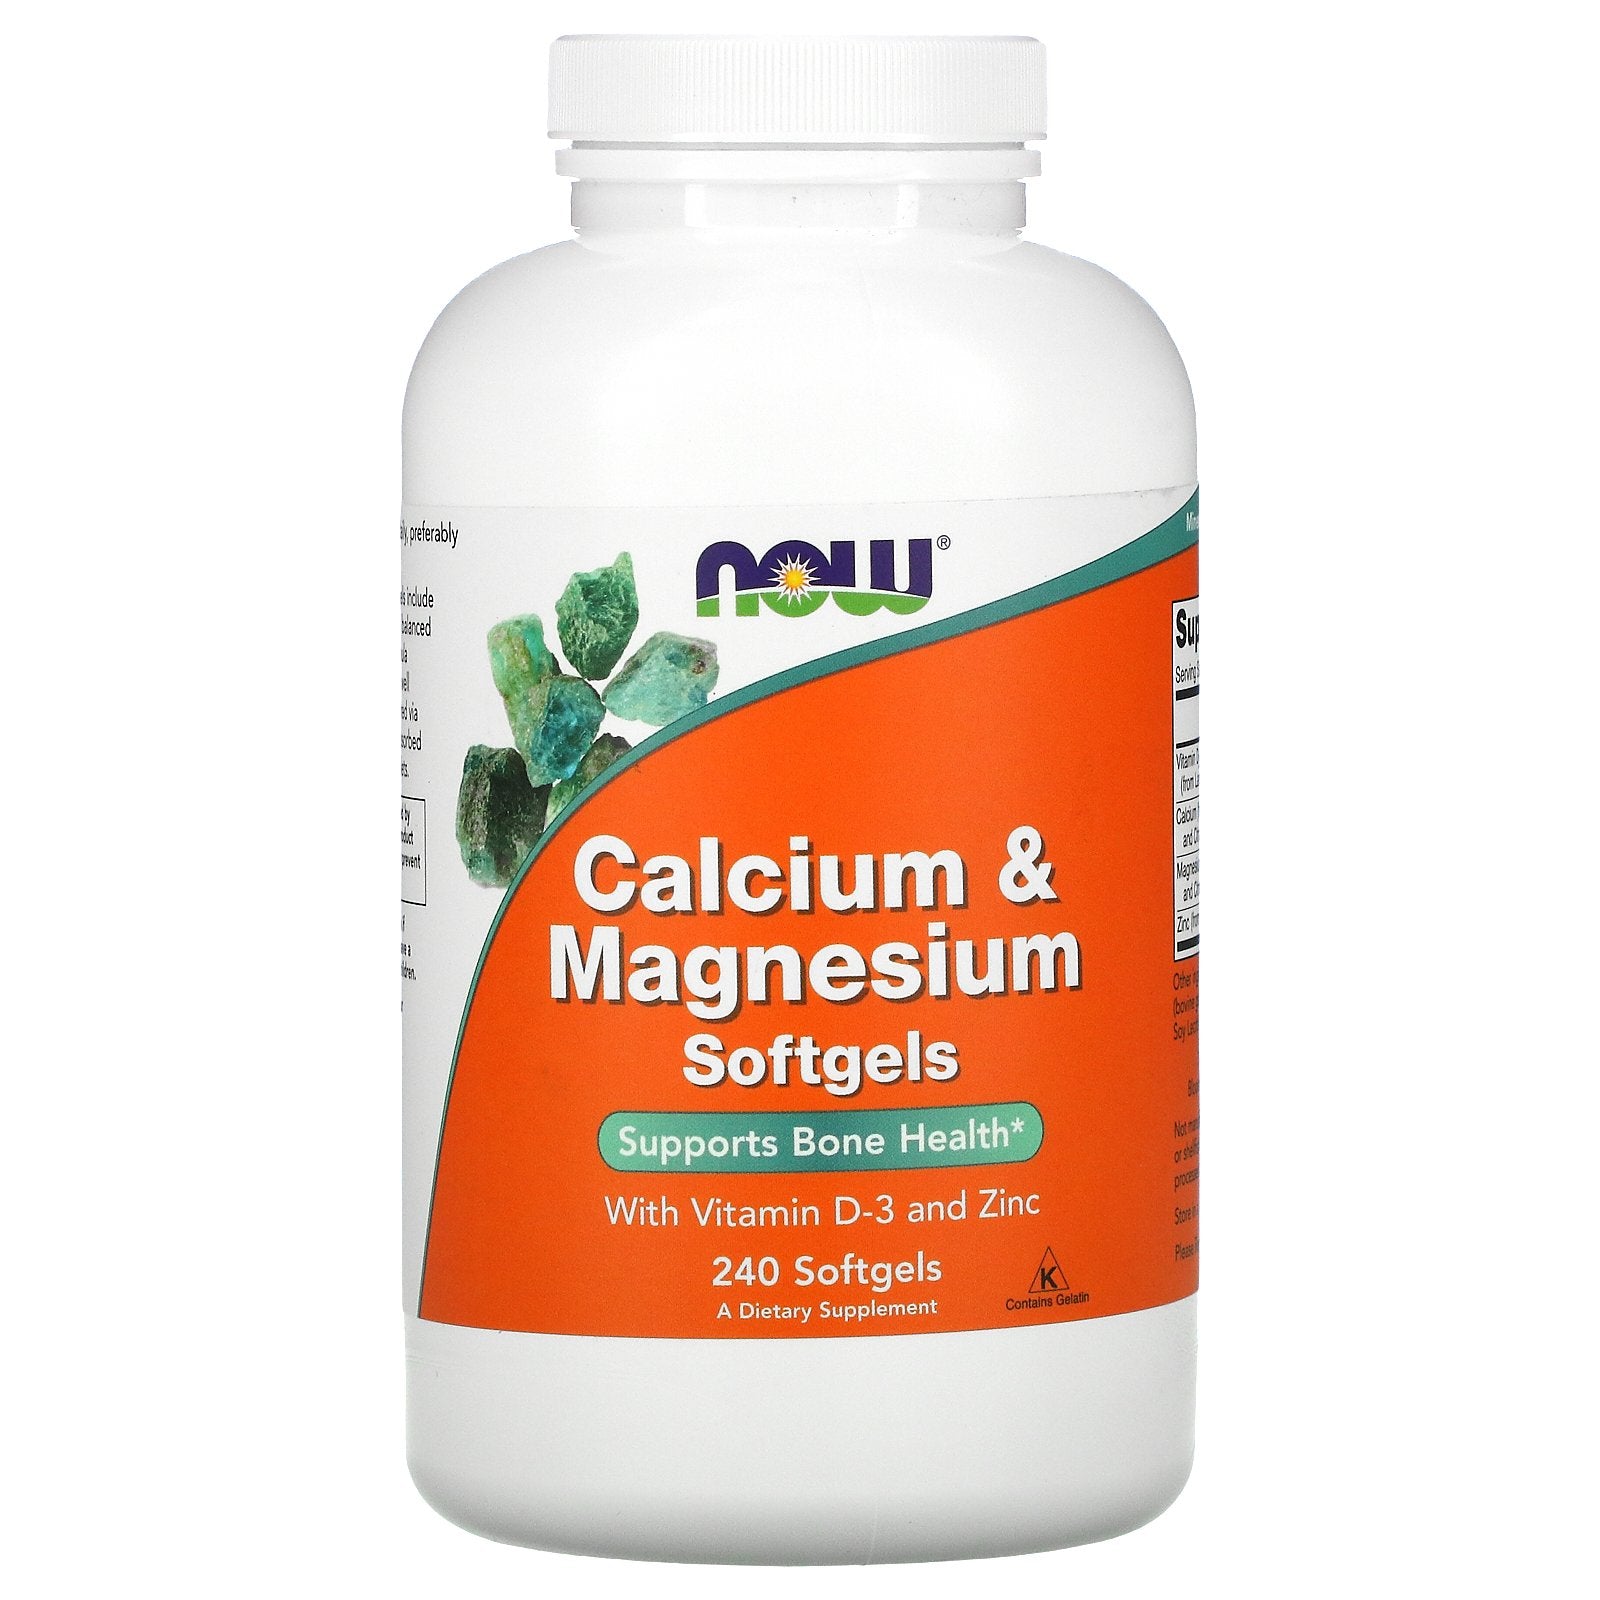 Calcium & Magnesium with D3 & Zinc